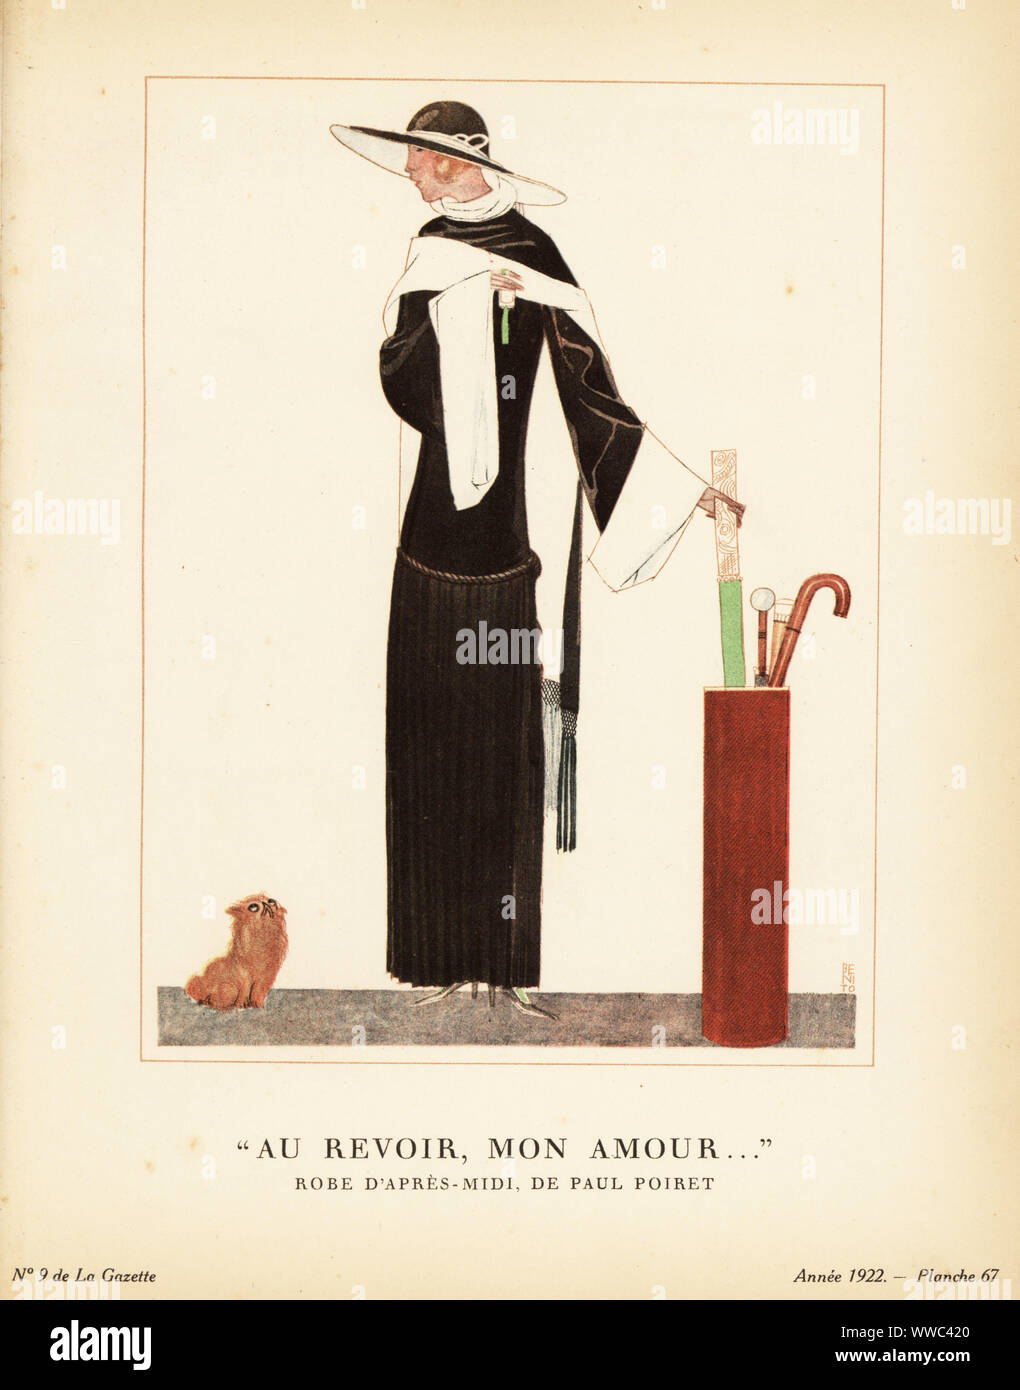 Woman in afternoon dress of black and white crepe, picking up a parasol and making an exit. Au revoir, mon amour. Robe d’après-midi, de Paul Poiret, en crèpe noir et crèpe blanc; ceinture cordonnet et soie; franges de soie. Plate 67, Vol. 2.9, 1922. Handcoloured pochoir lithograph by Edouardo Garcia Benito from Lucien Vogel’s Le Bon Genre: 100 Plates from Gazette du Bon Ton, Brentano’s, Paris, 1922. Stock Photo